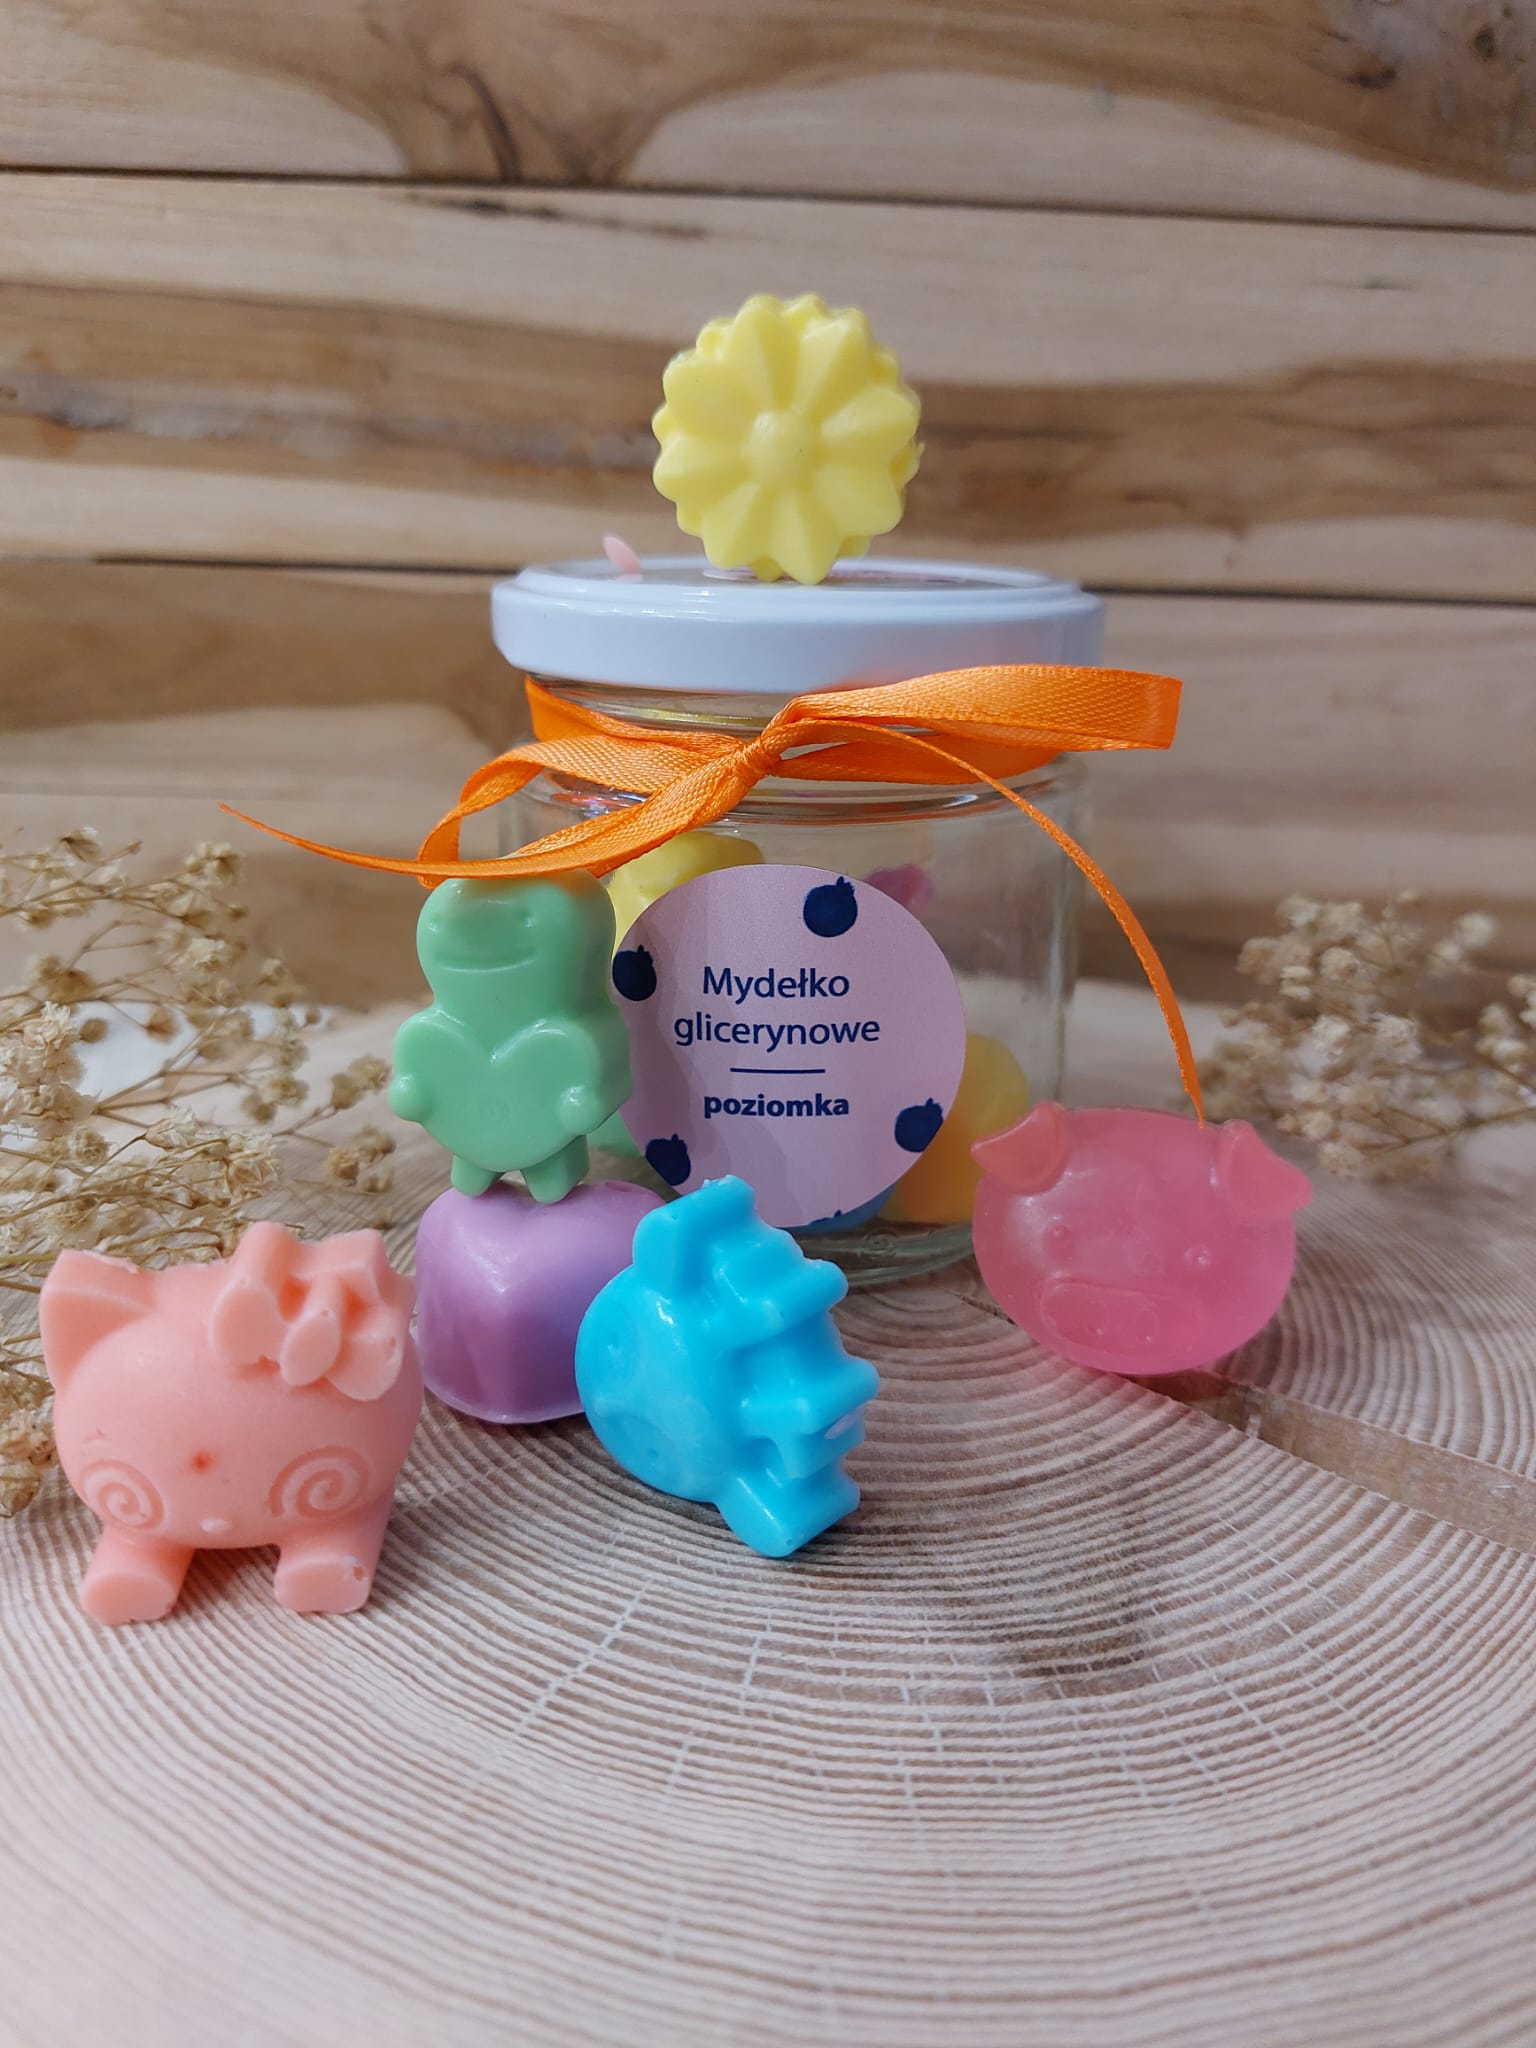 Słoiczek z mydełkami glicerynowymi o różnych kształtach i kolorach o zapachu poziomki